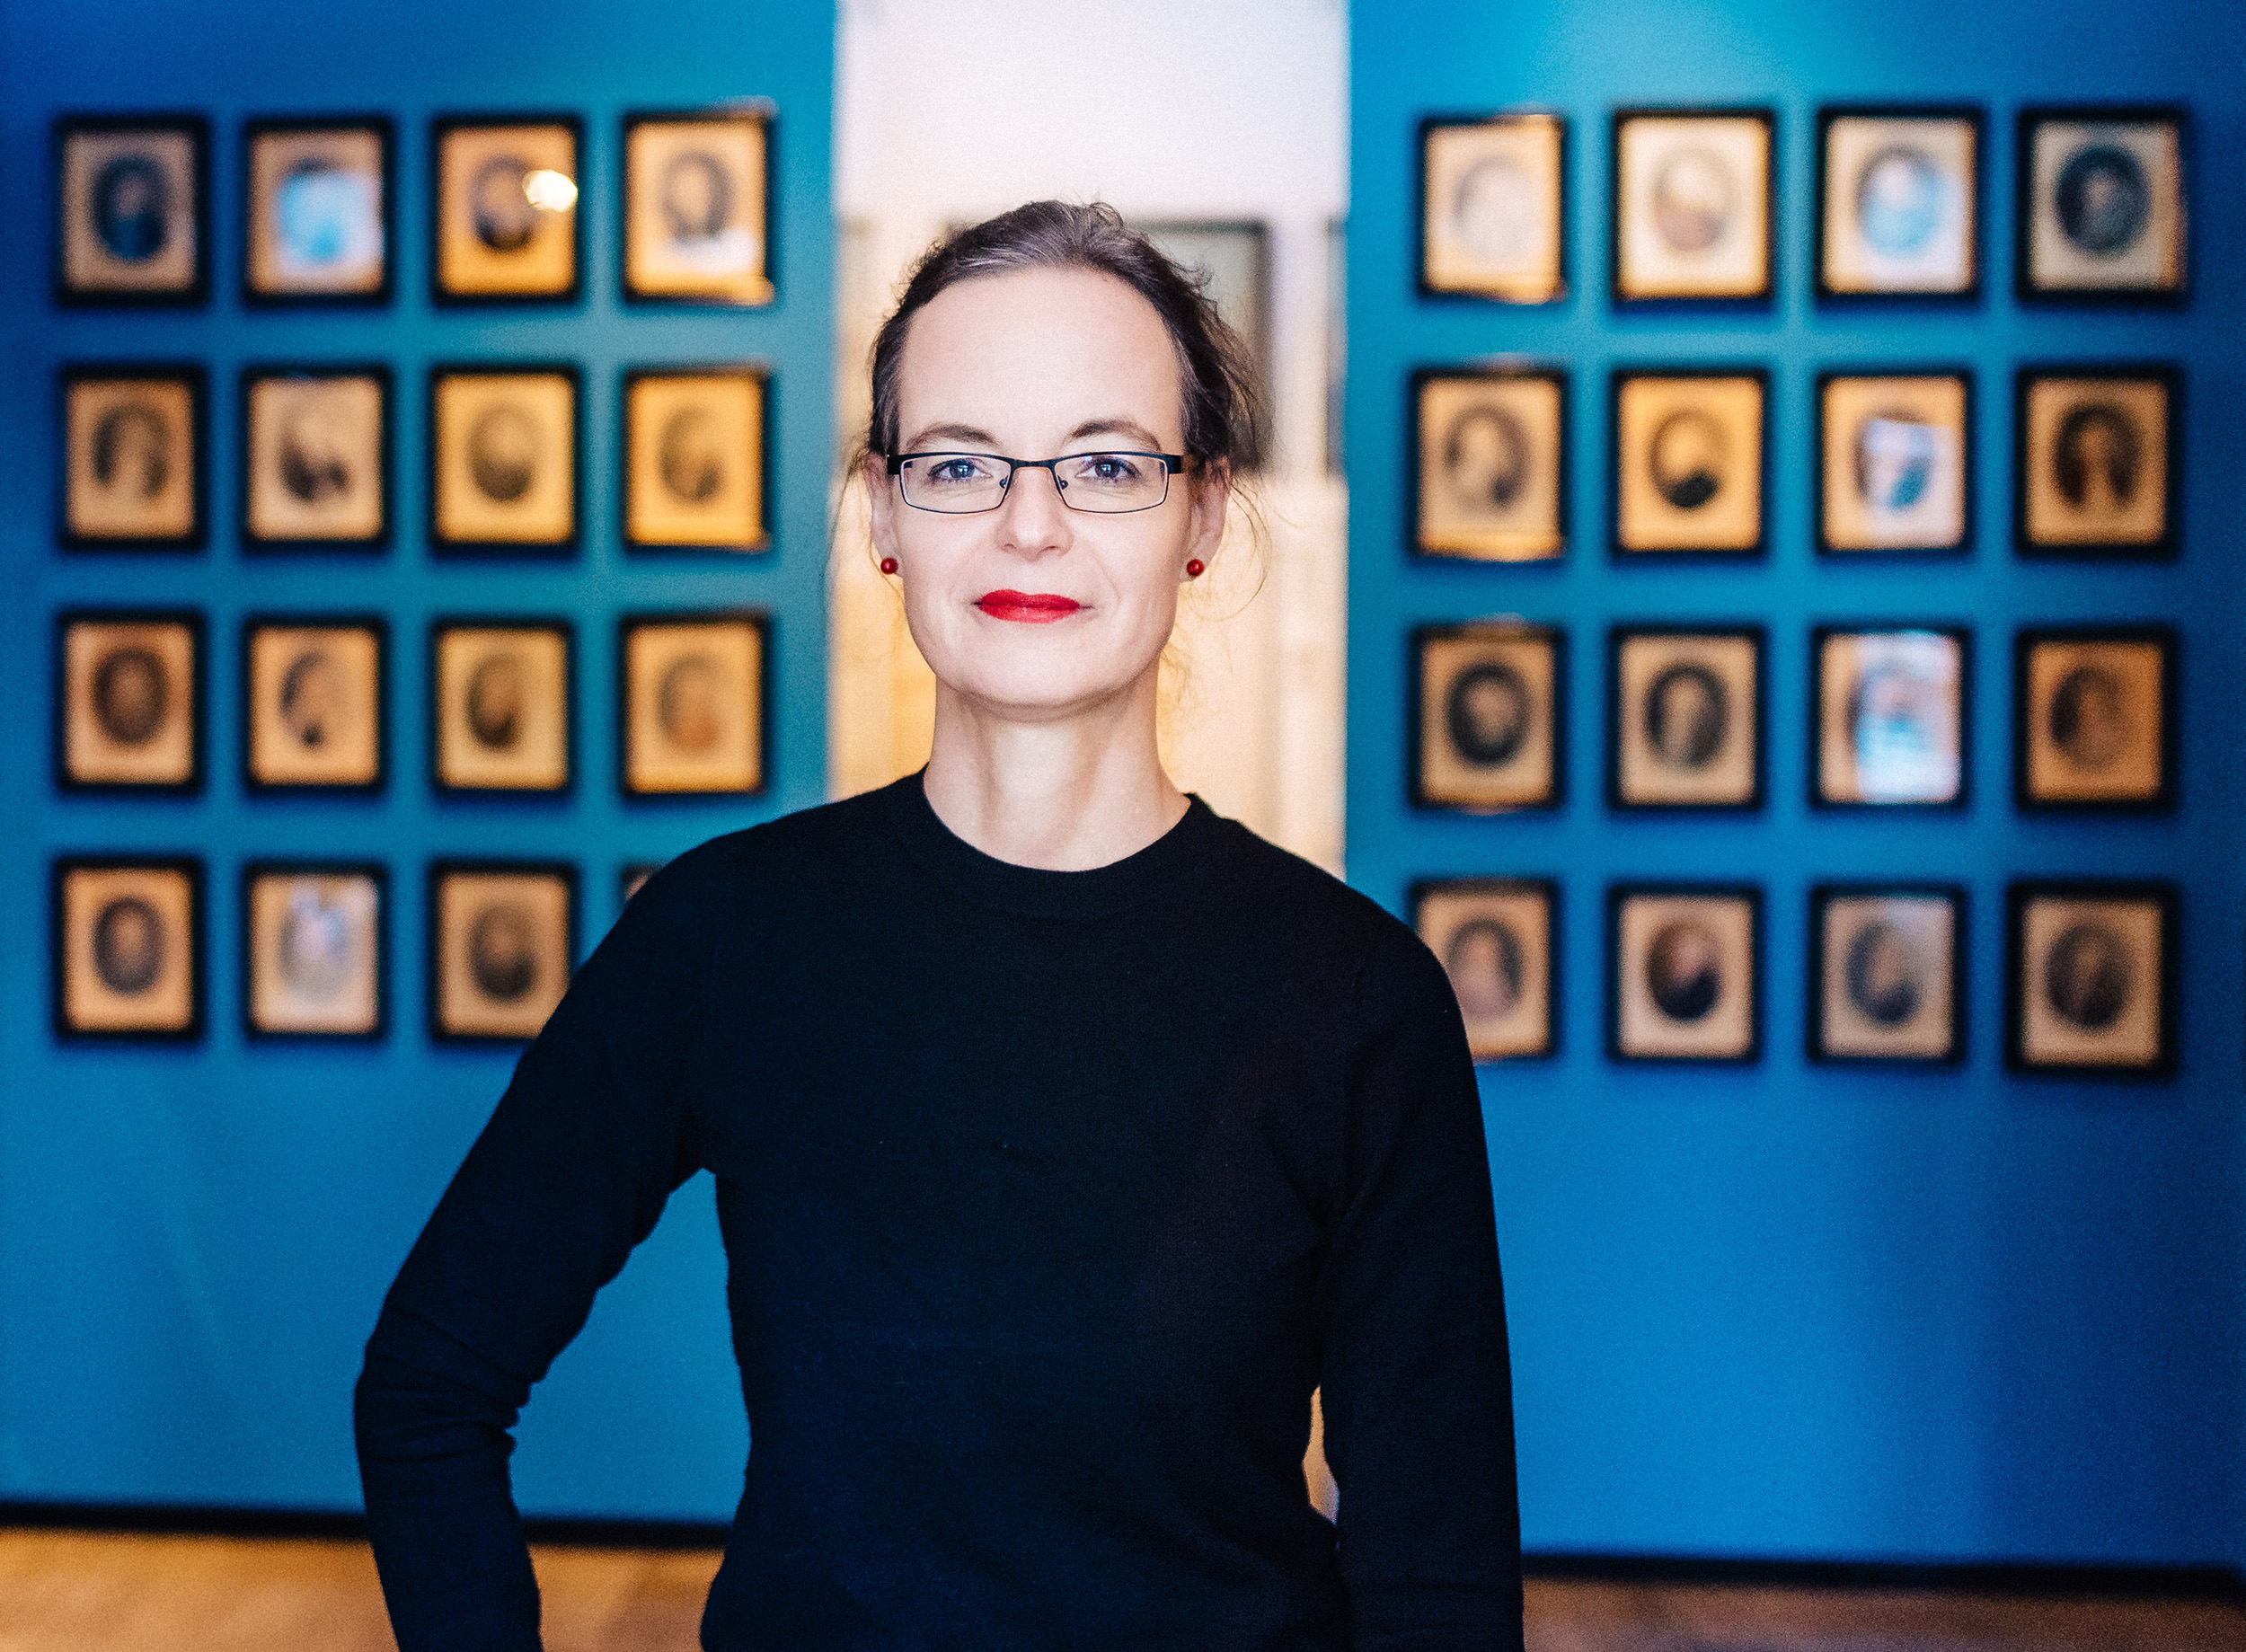 Direktorin Anna Greve steht vor Bildern des Wilcken'schen Kabinetts